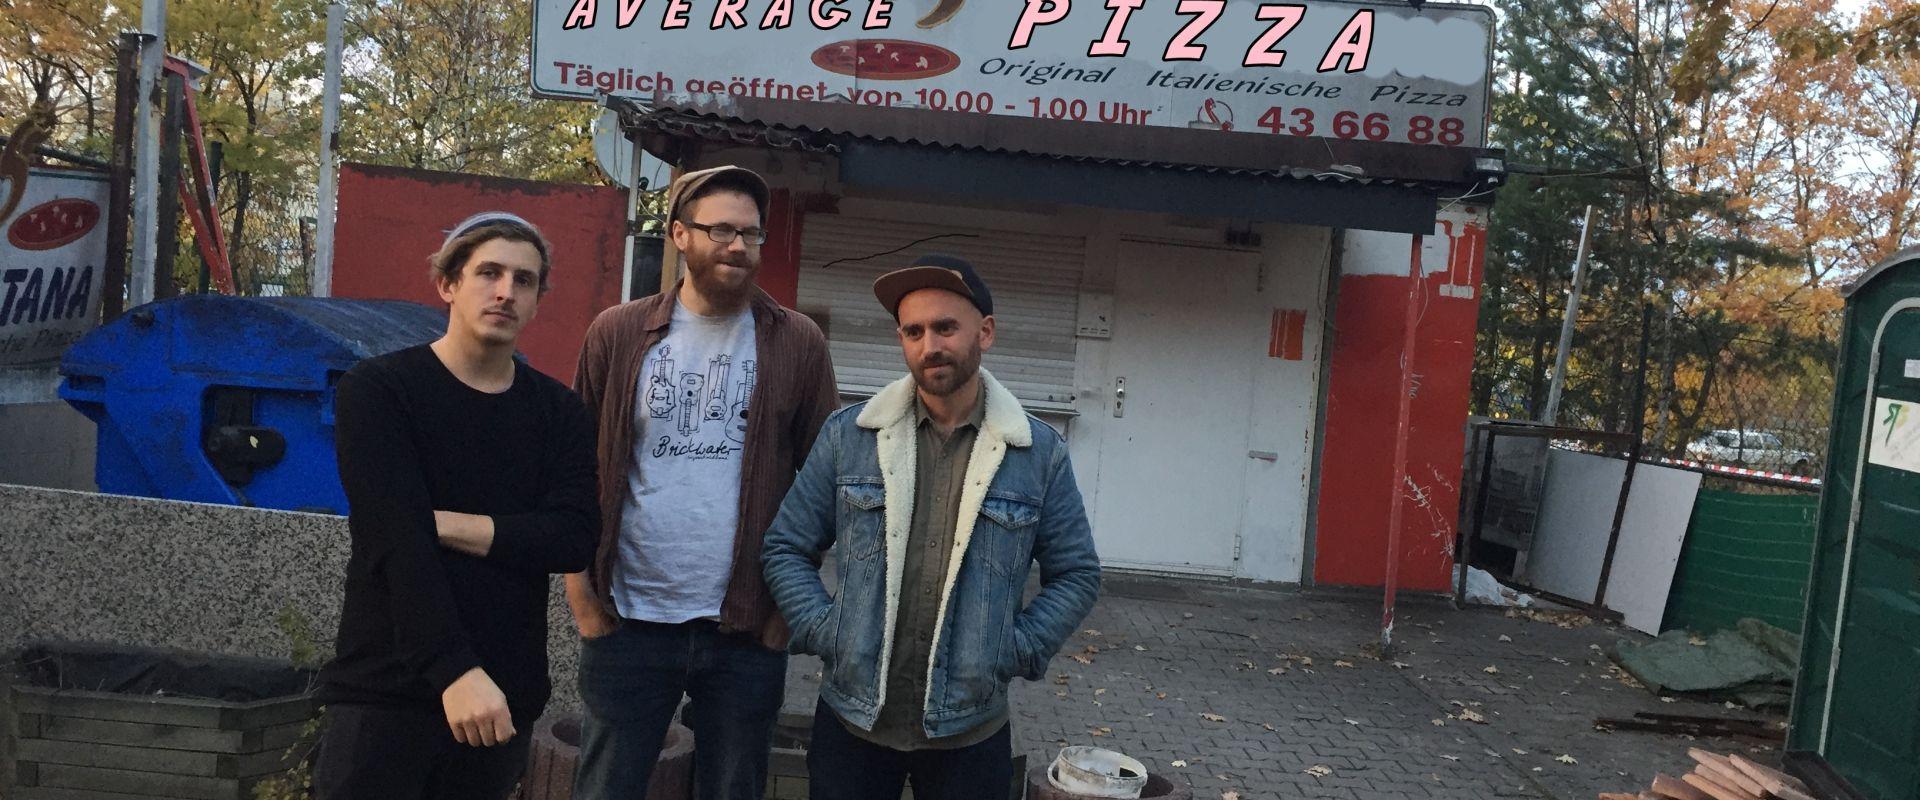 Band: Average Pizza